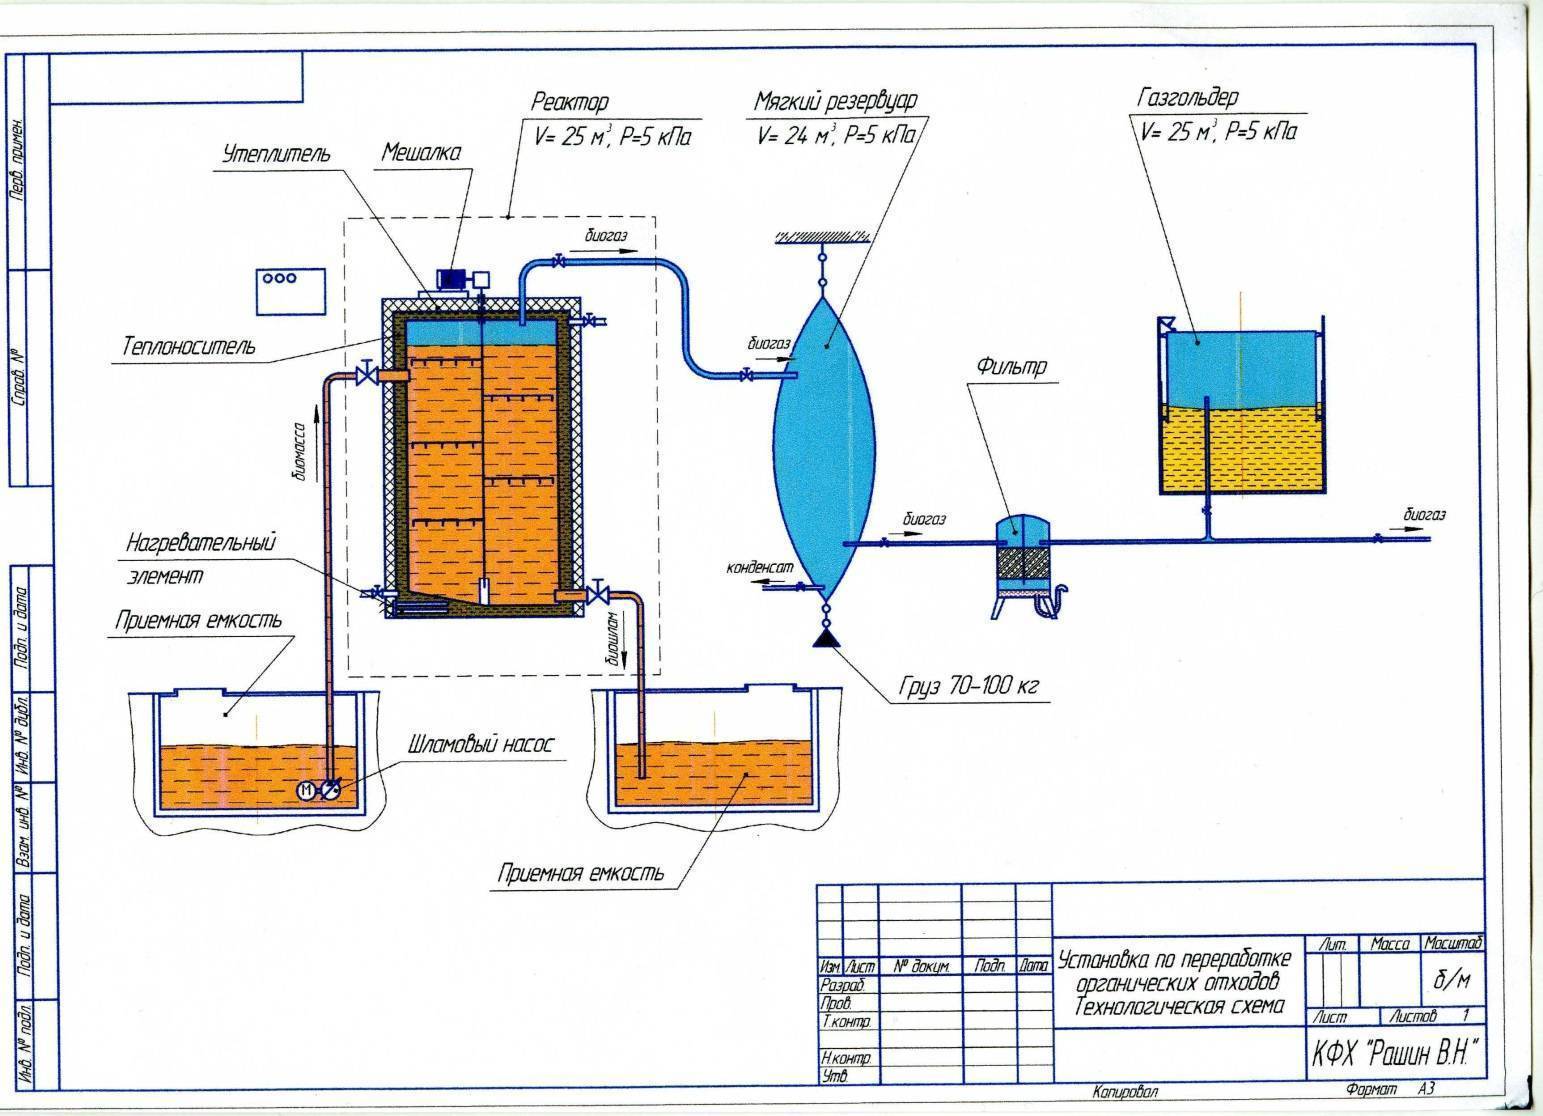 Биогазовая установка своими руками для отопления дома - отопление квартир и частных домов своими руками